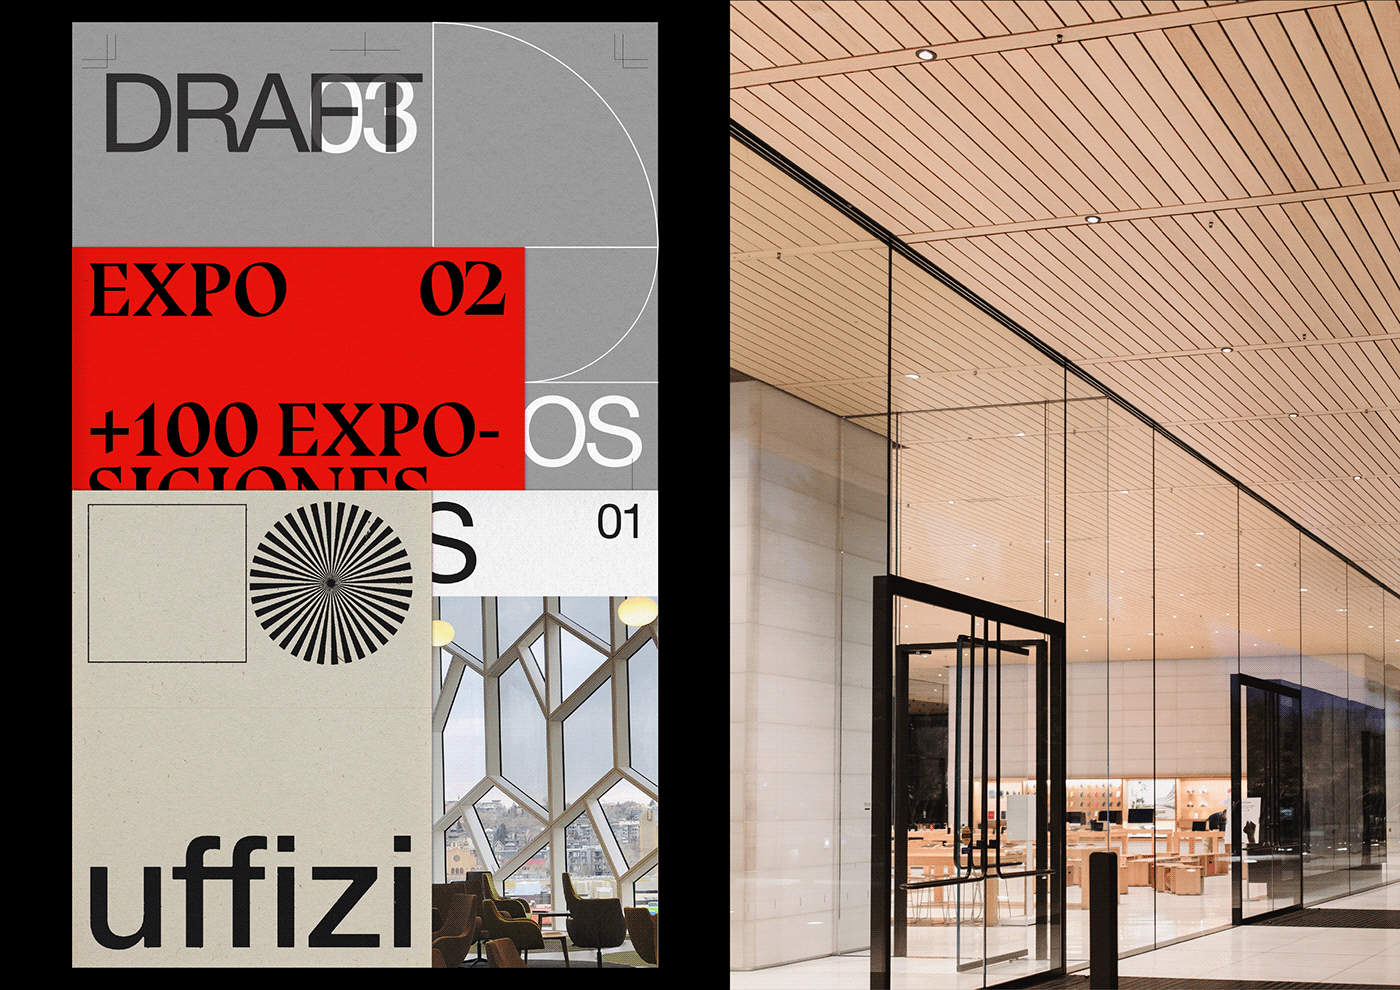 展台、展览设计品牌Uffizi画册设计